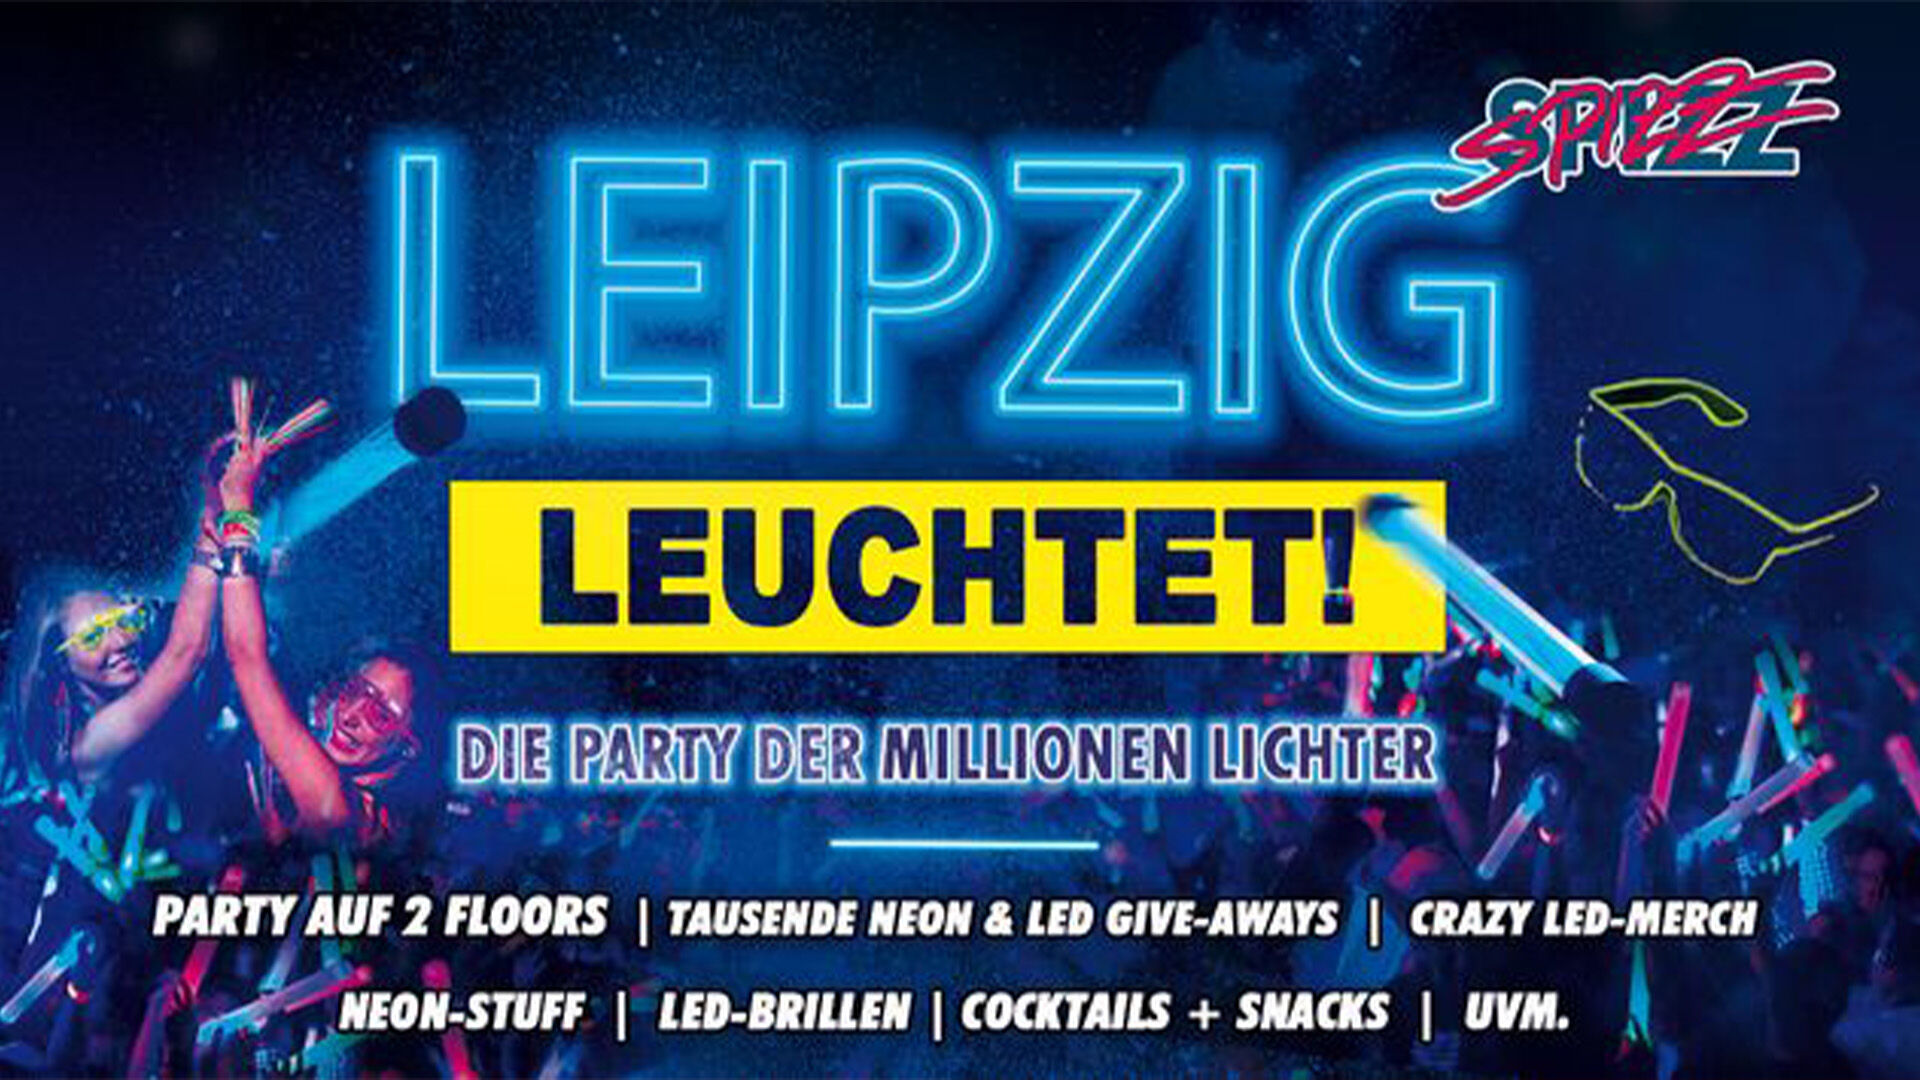 Leipzig leuchtet!